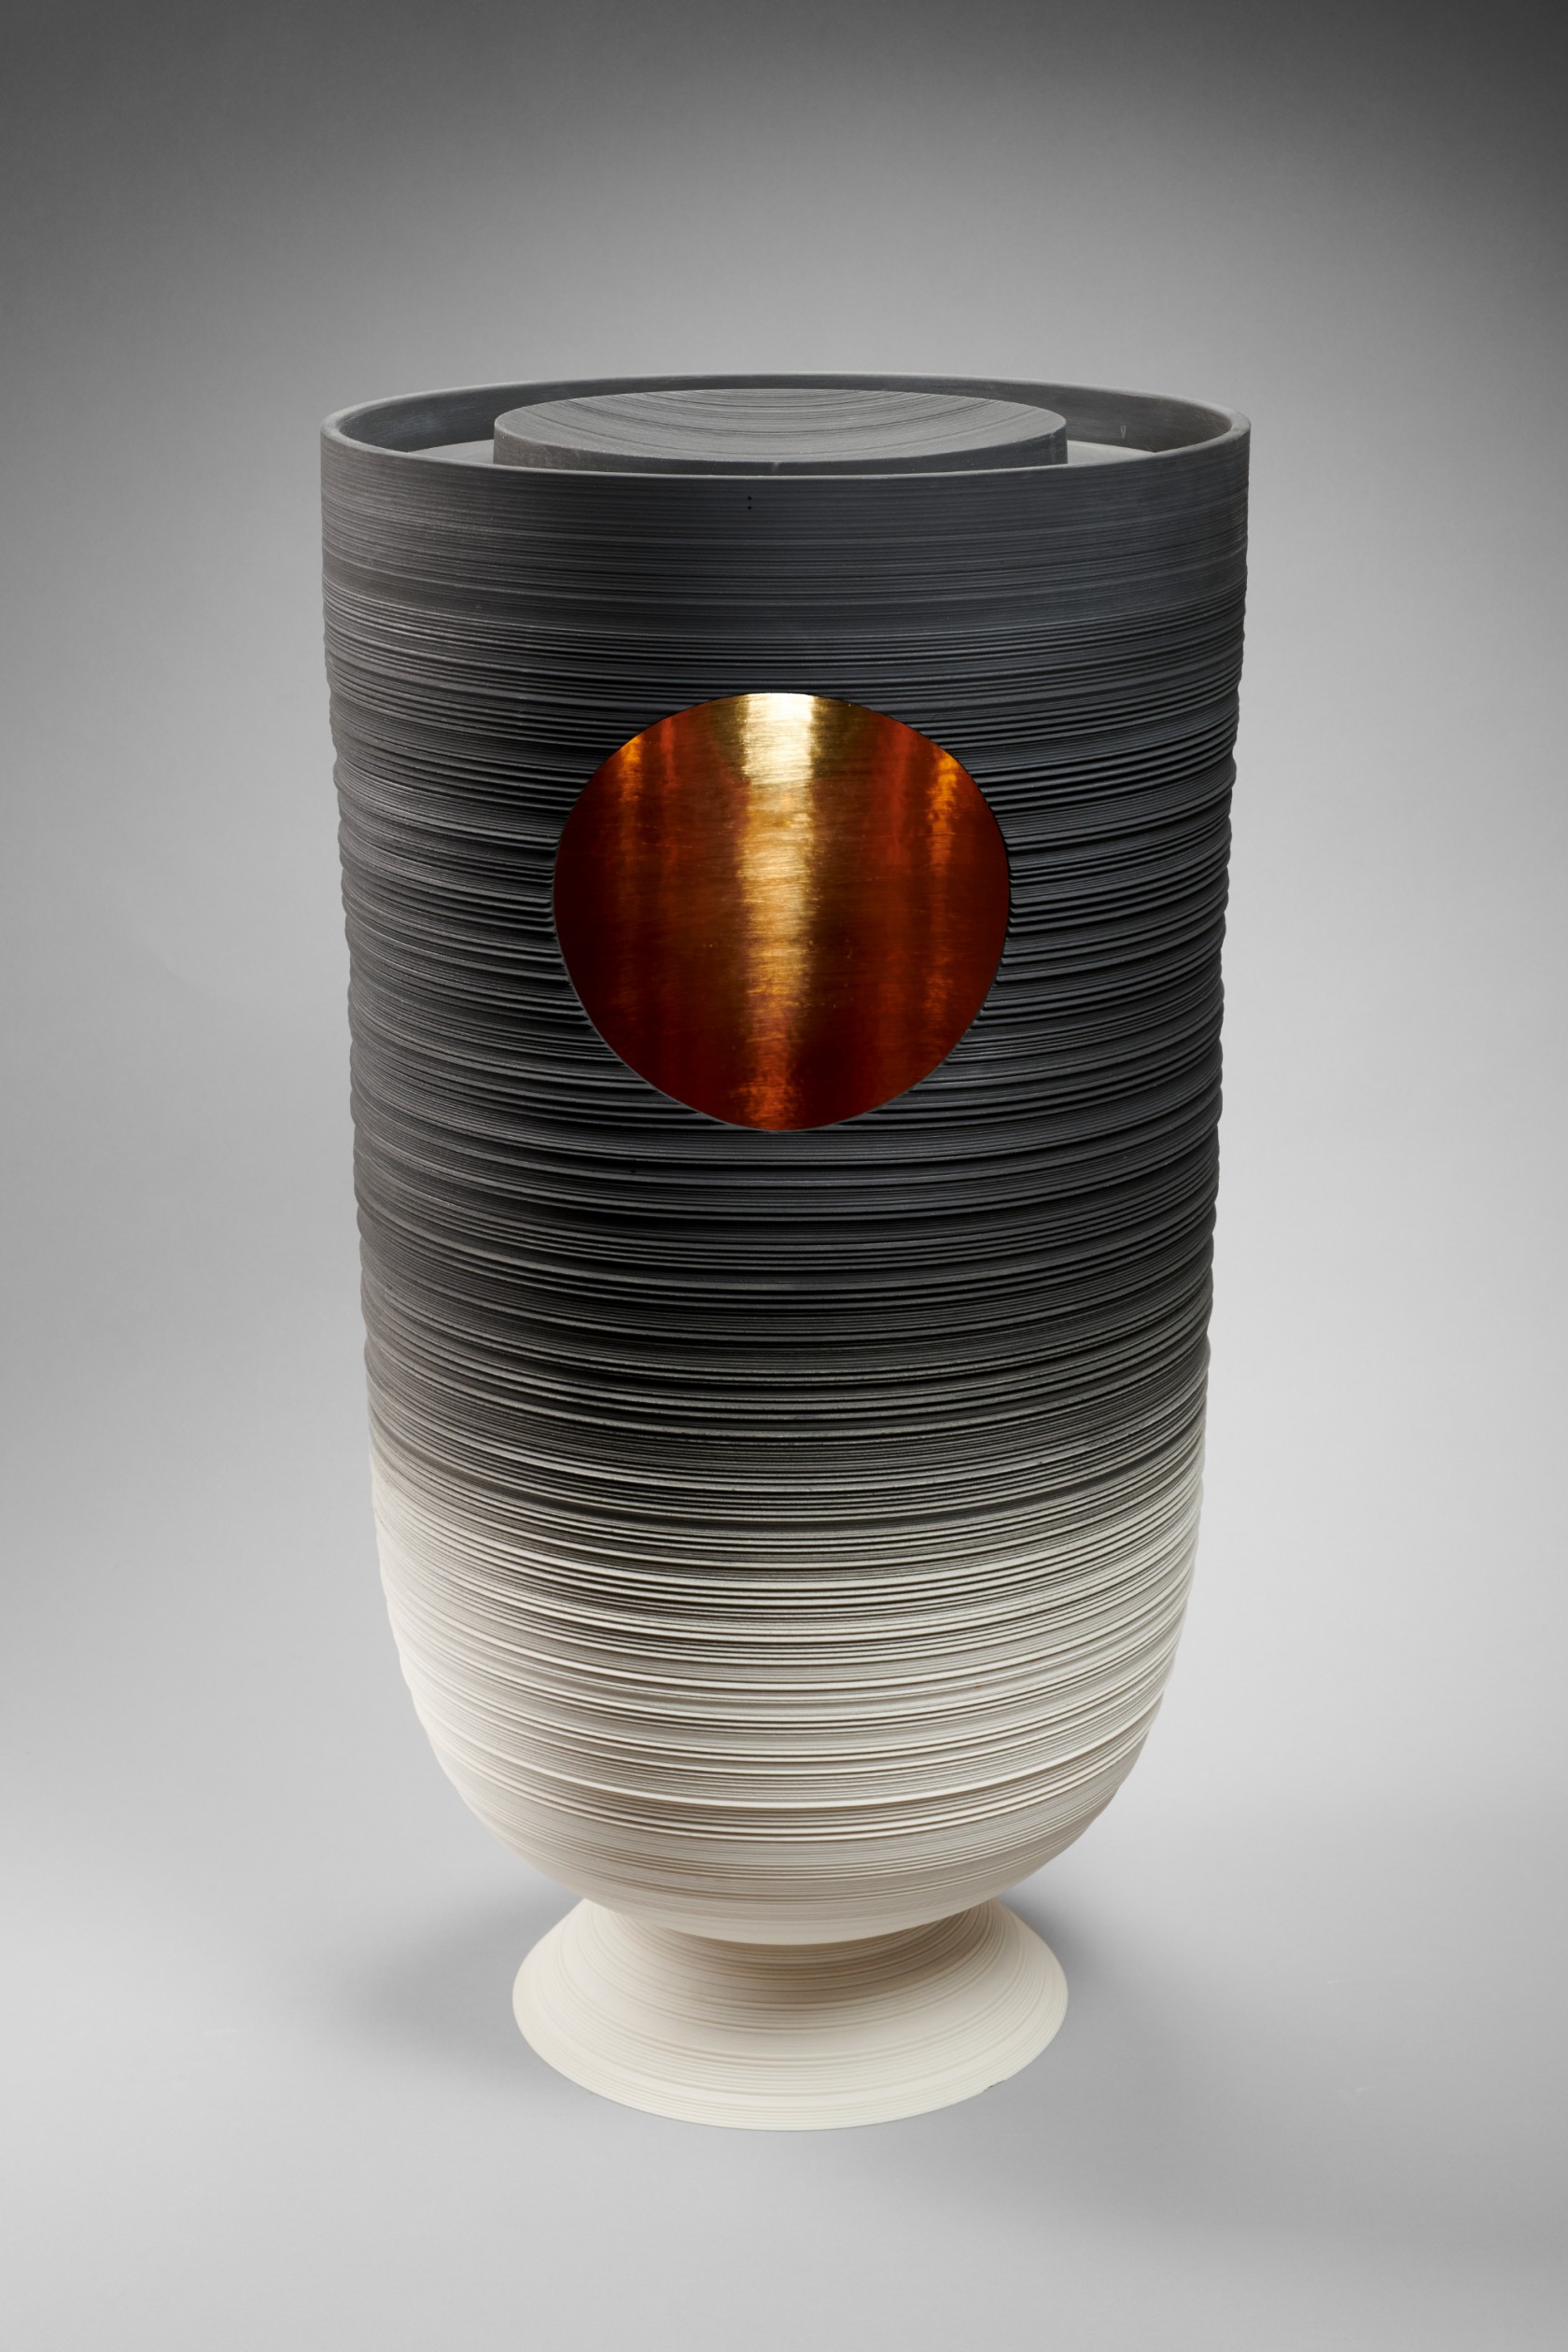 Pierre Soulages's Vase